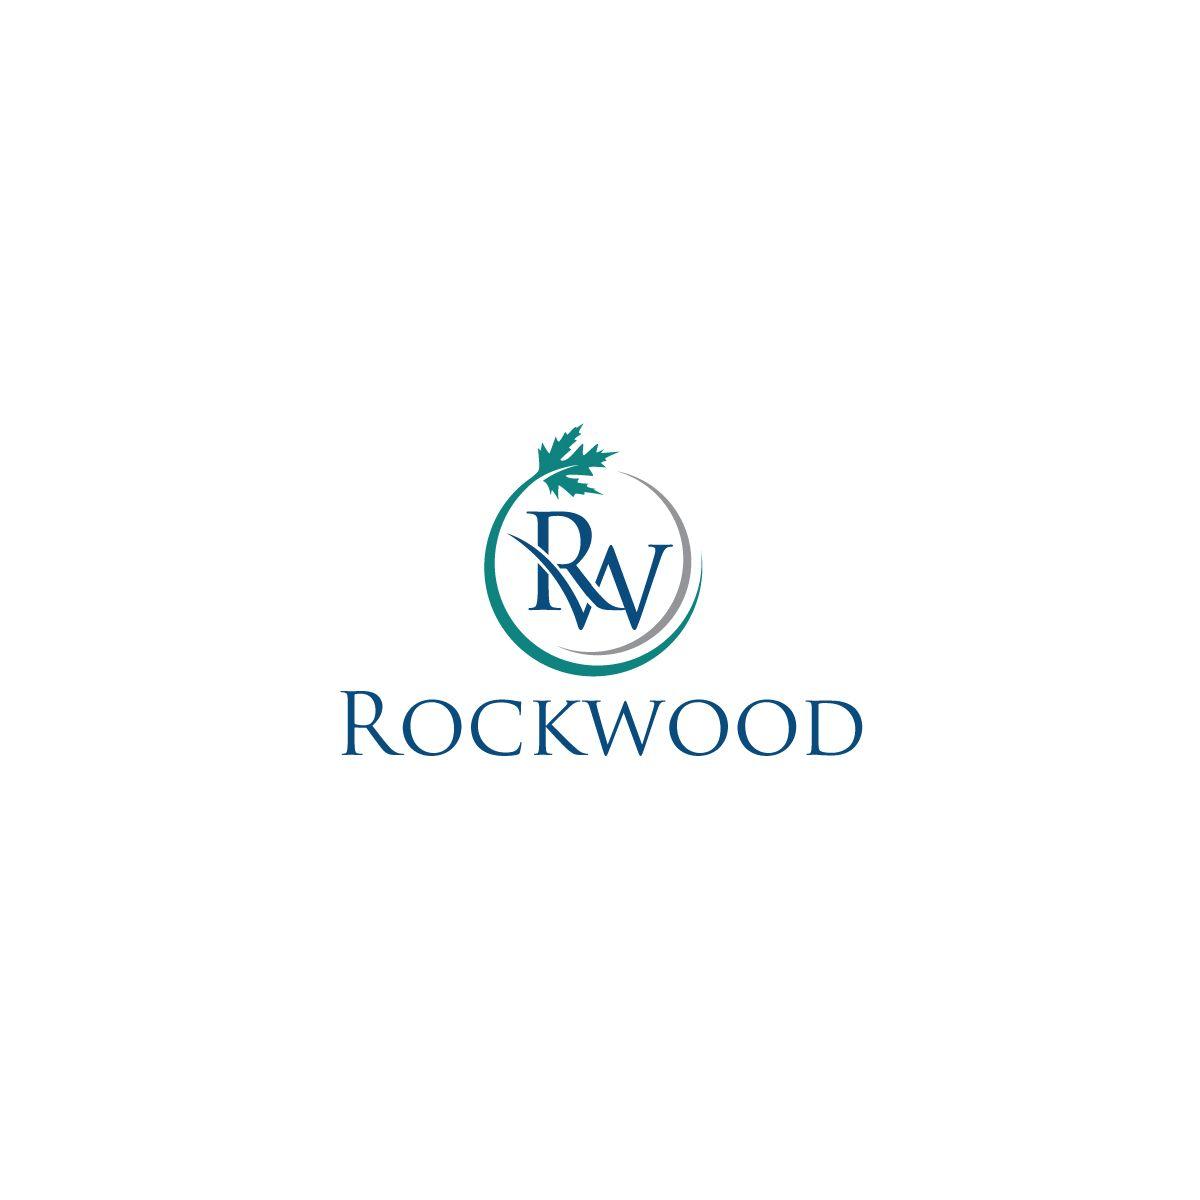 Rockwood Logo - Elegant, Playful, Consumer Logo Design for Rockwood by Ana124 ...